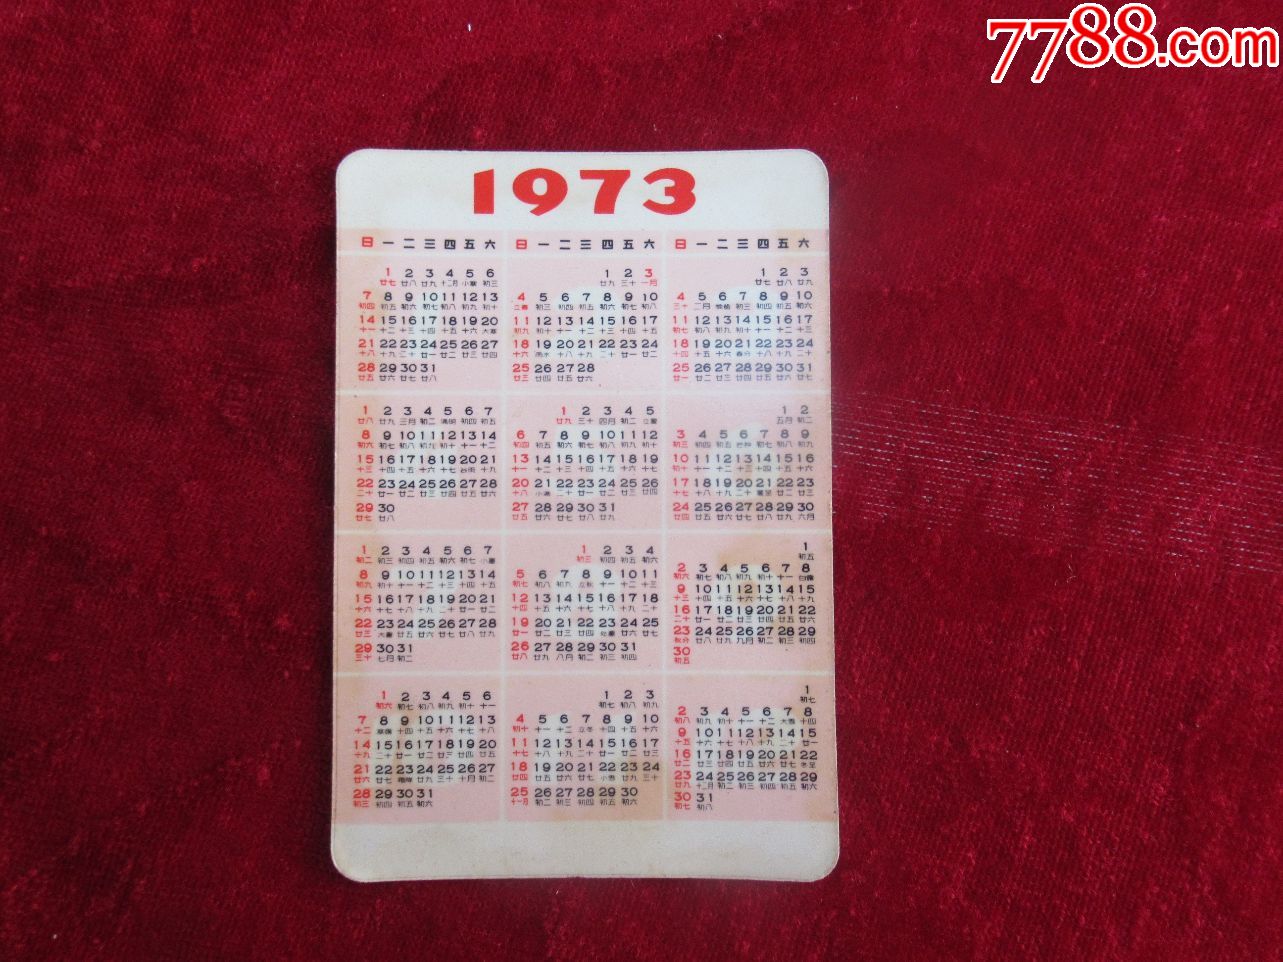 【年历卡收藏】1973年发行的杂技年历卡(以图为准)